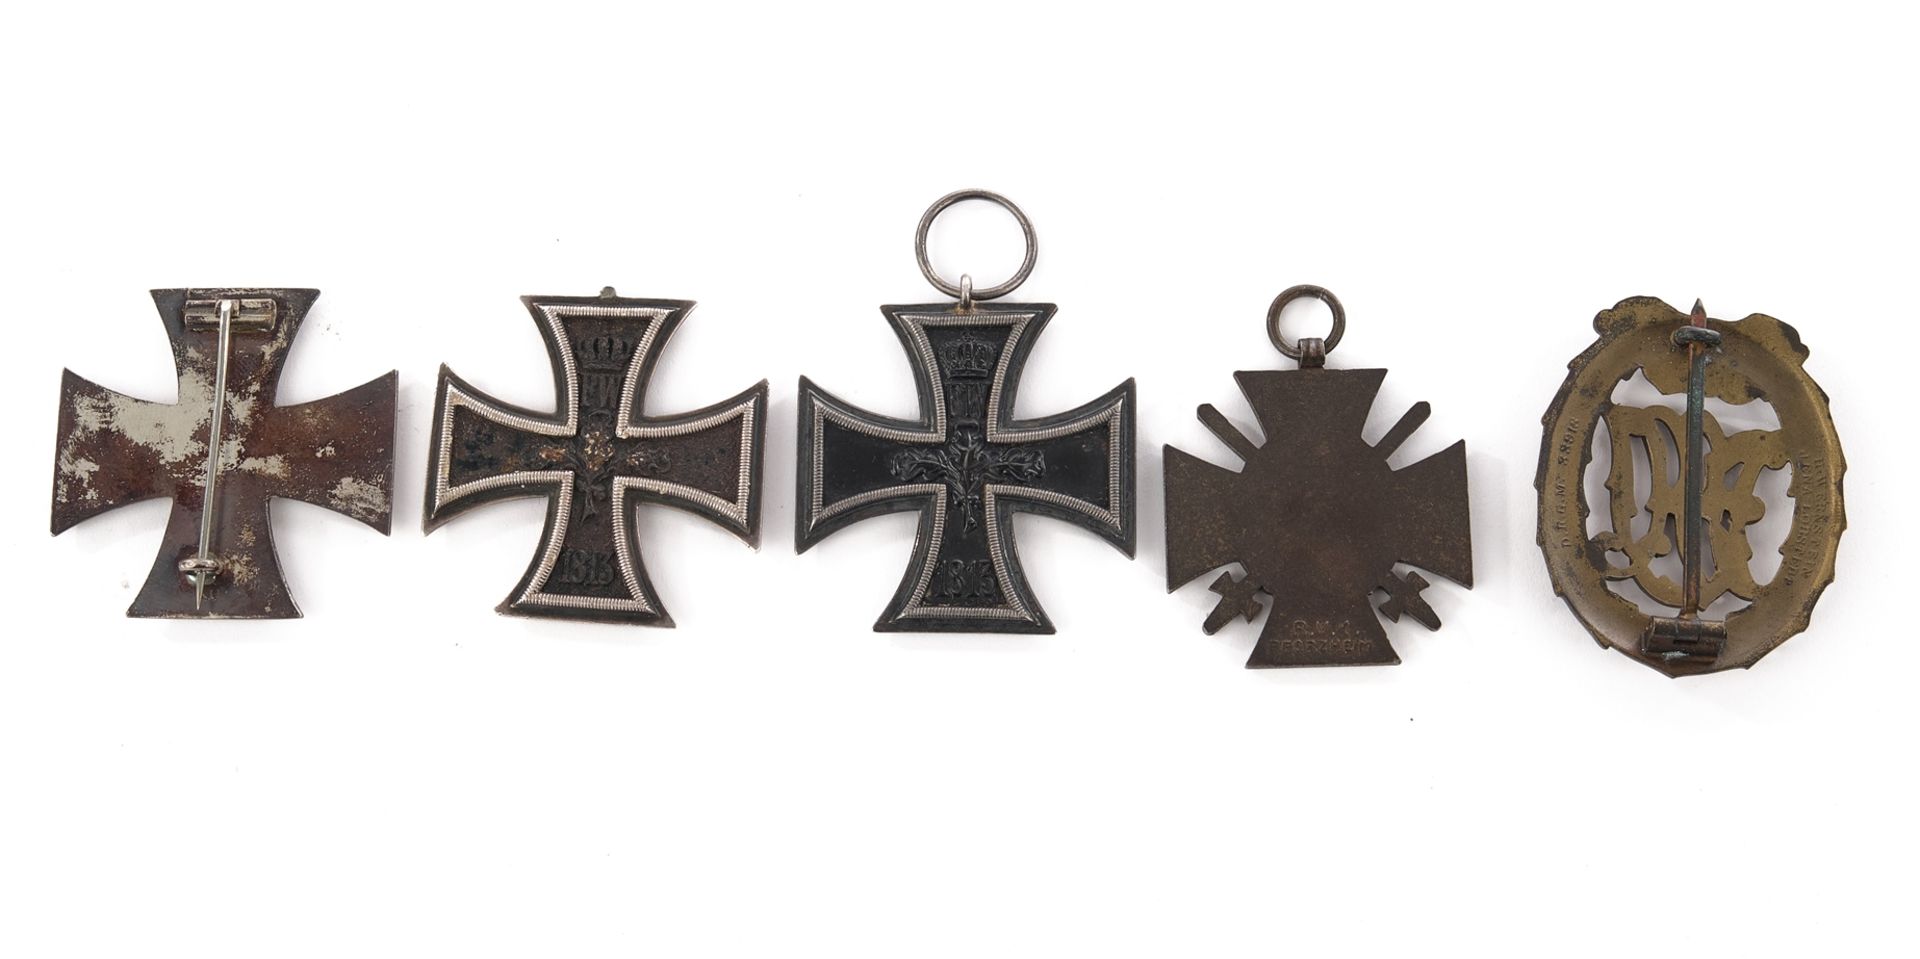 Konvolut von 5 Orden und Auszeichnungen, Deutsches Kaiserreich - Image 2 of 2